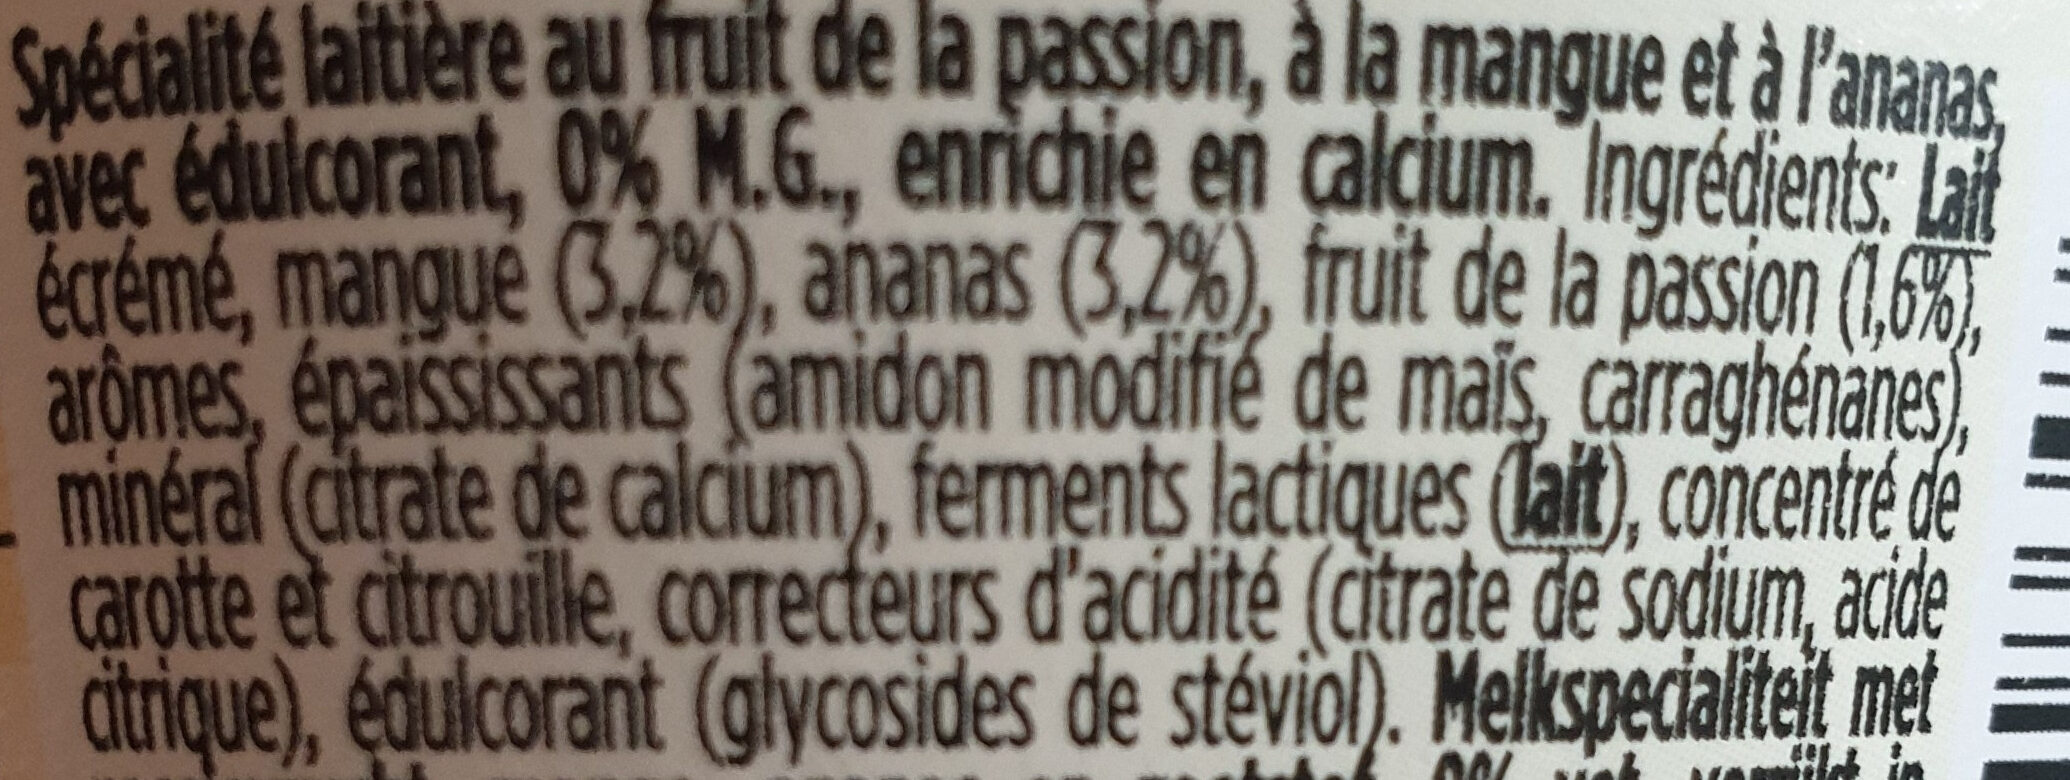 Fruits tropicaux sans M.G. / Tropische vruchten - Ingredients - fr